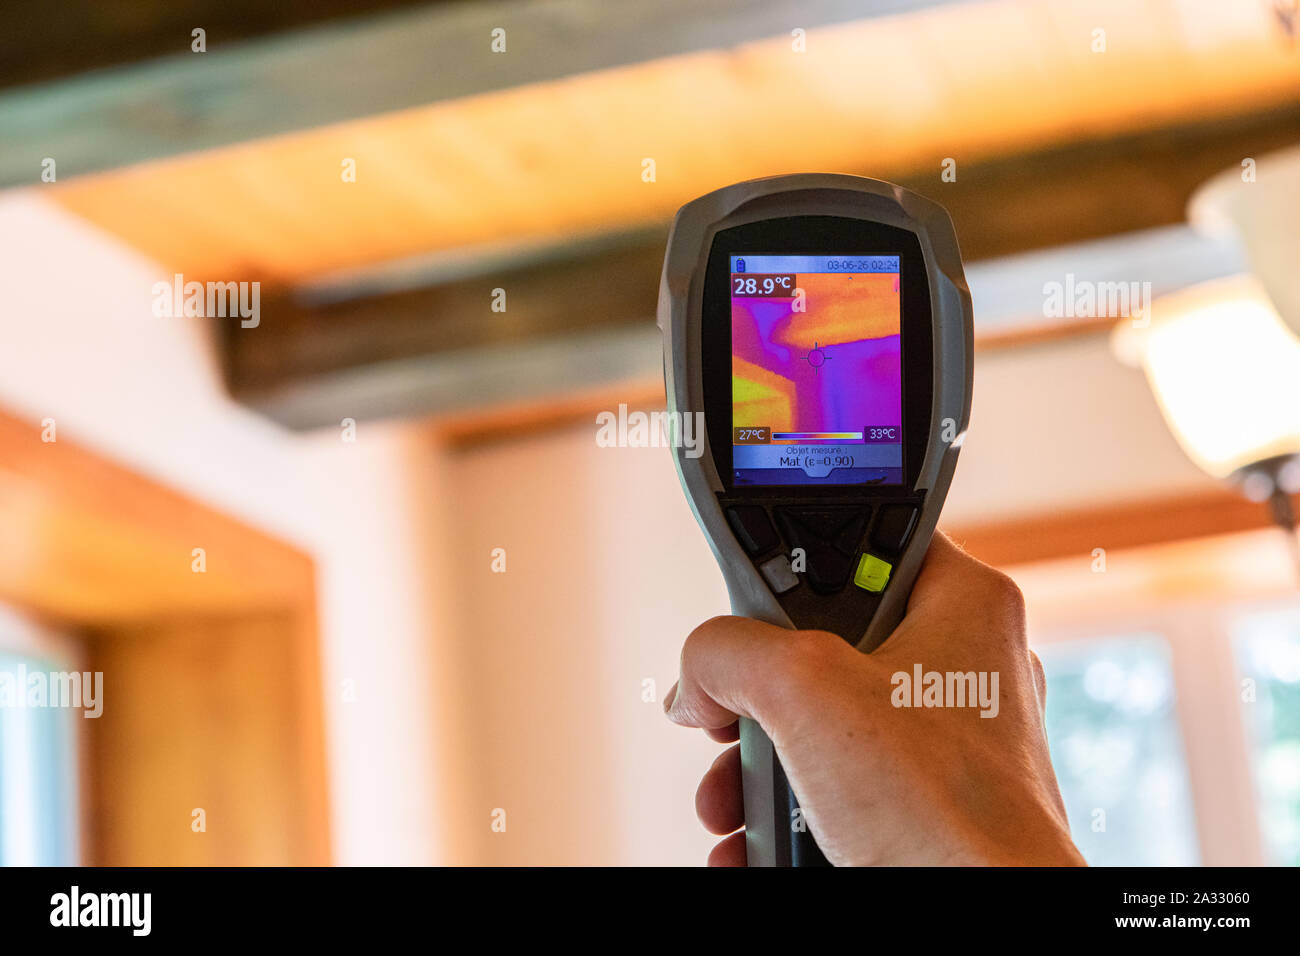 Un dispositivo de imagen térmica infrarroja es visto en uso, cierre durante una calidad ambiental interior y el reglamento de evaluación, con espacio de copia. Foto de stock